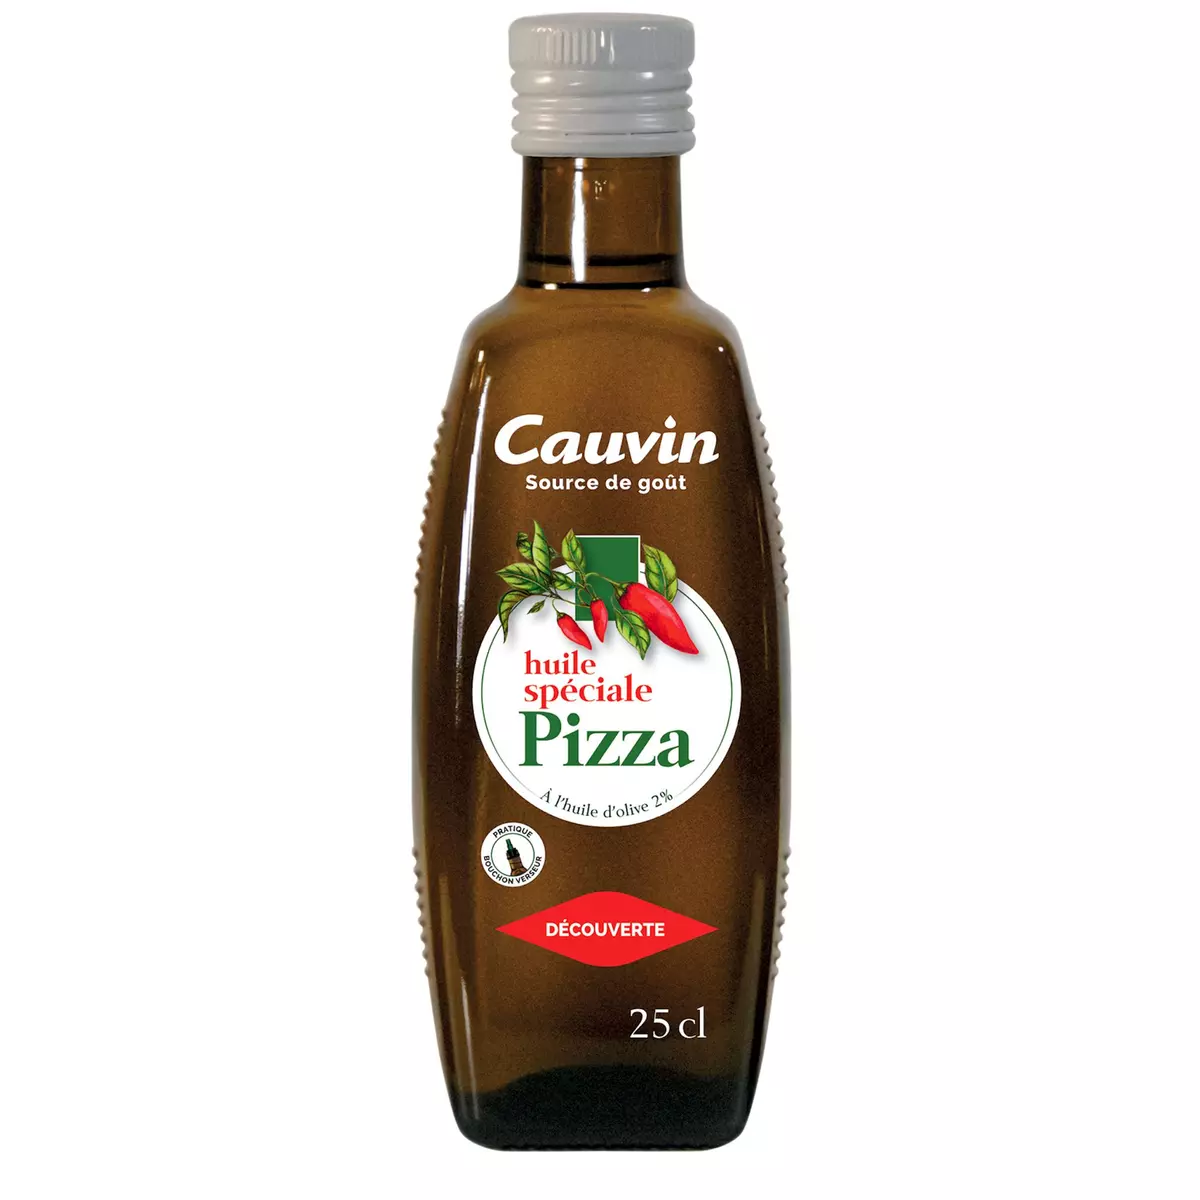 CAUVIN Huile pimentée spéciale pizza à l'huile d'olive 25cl